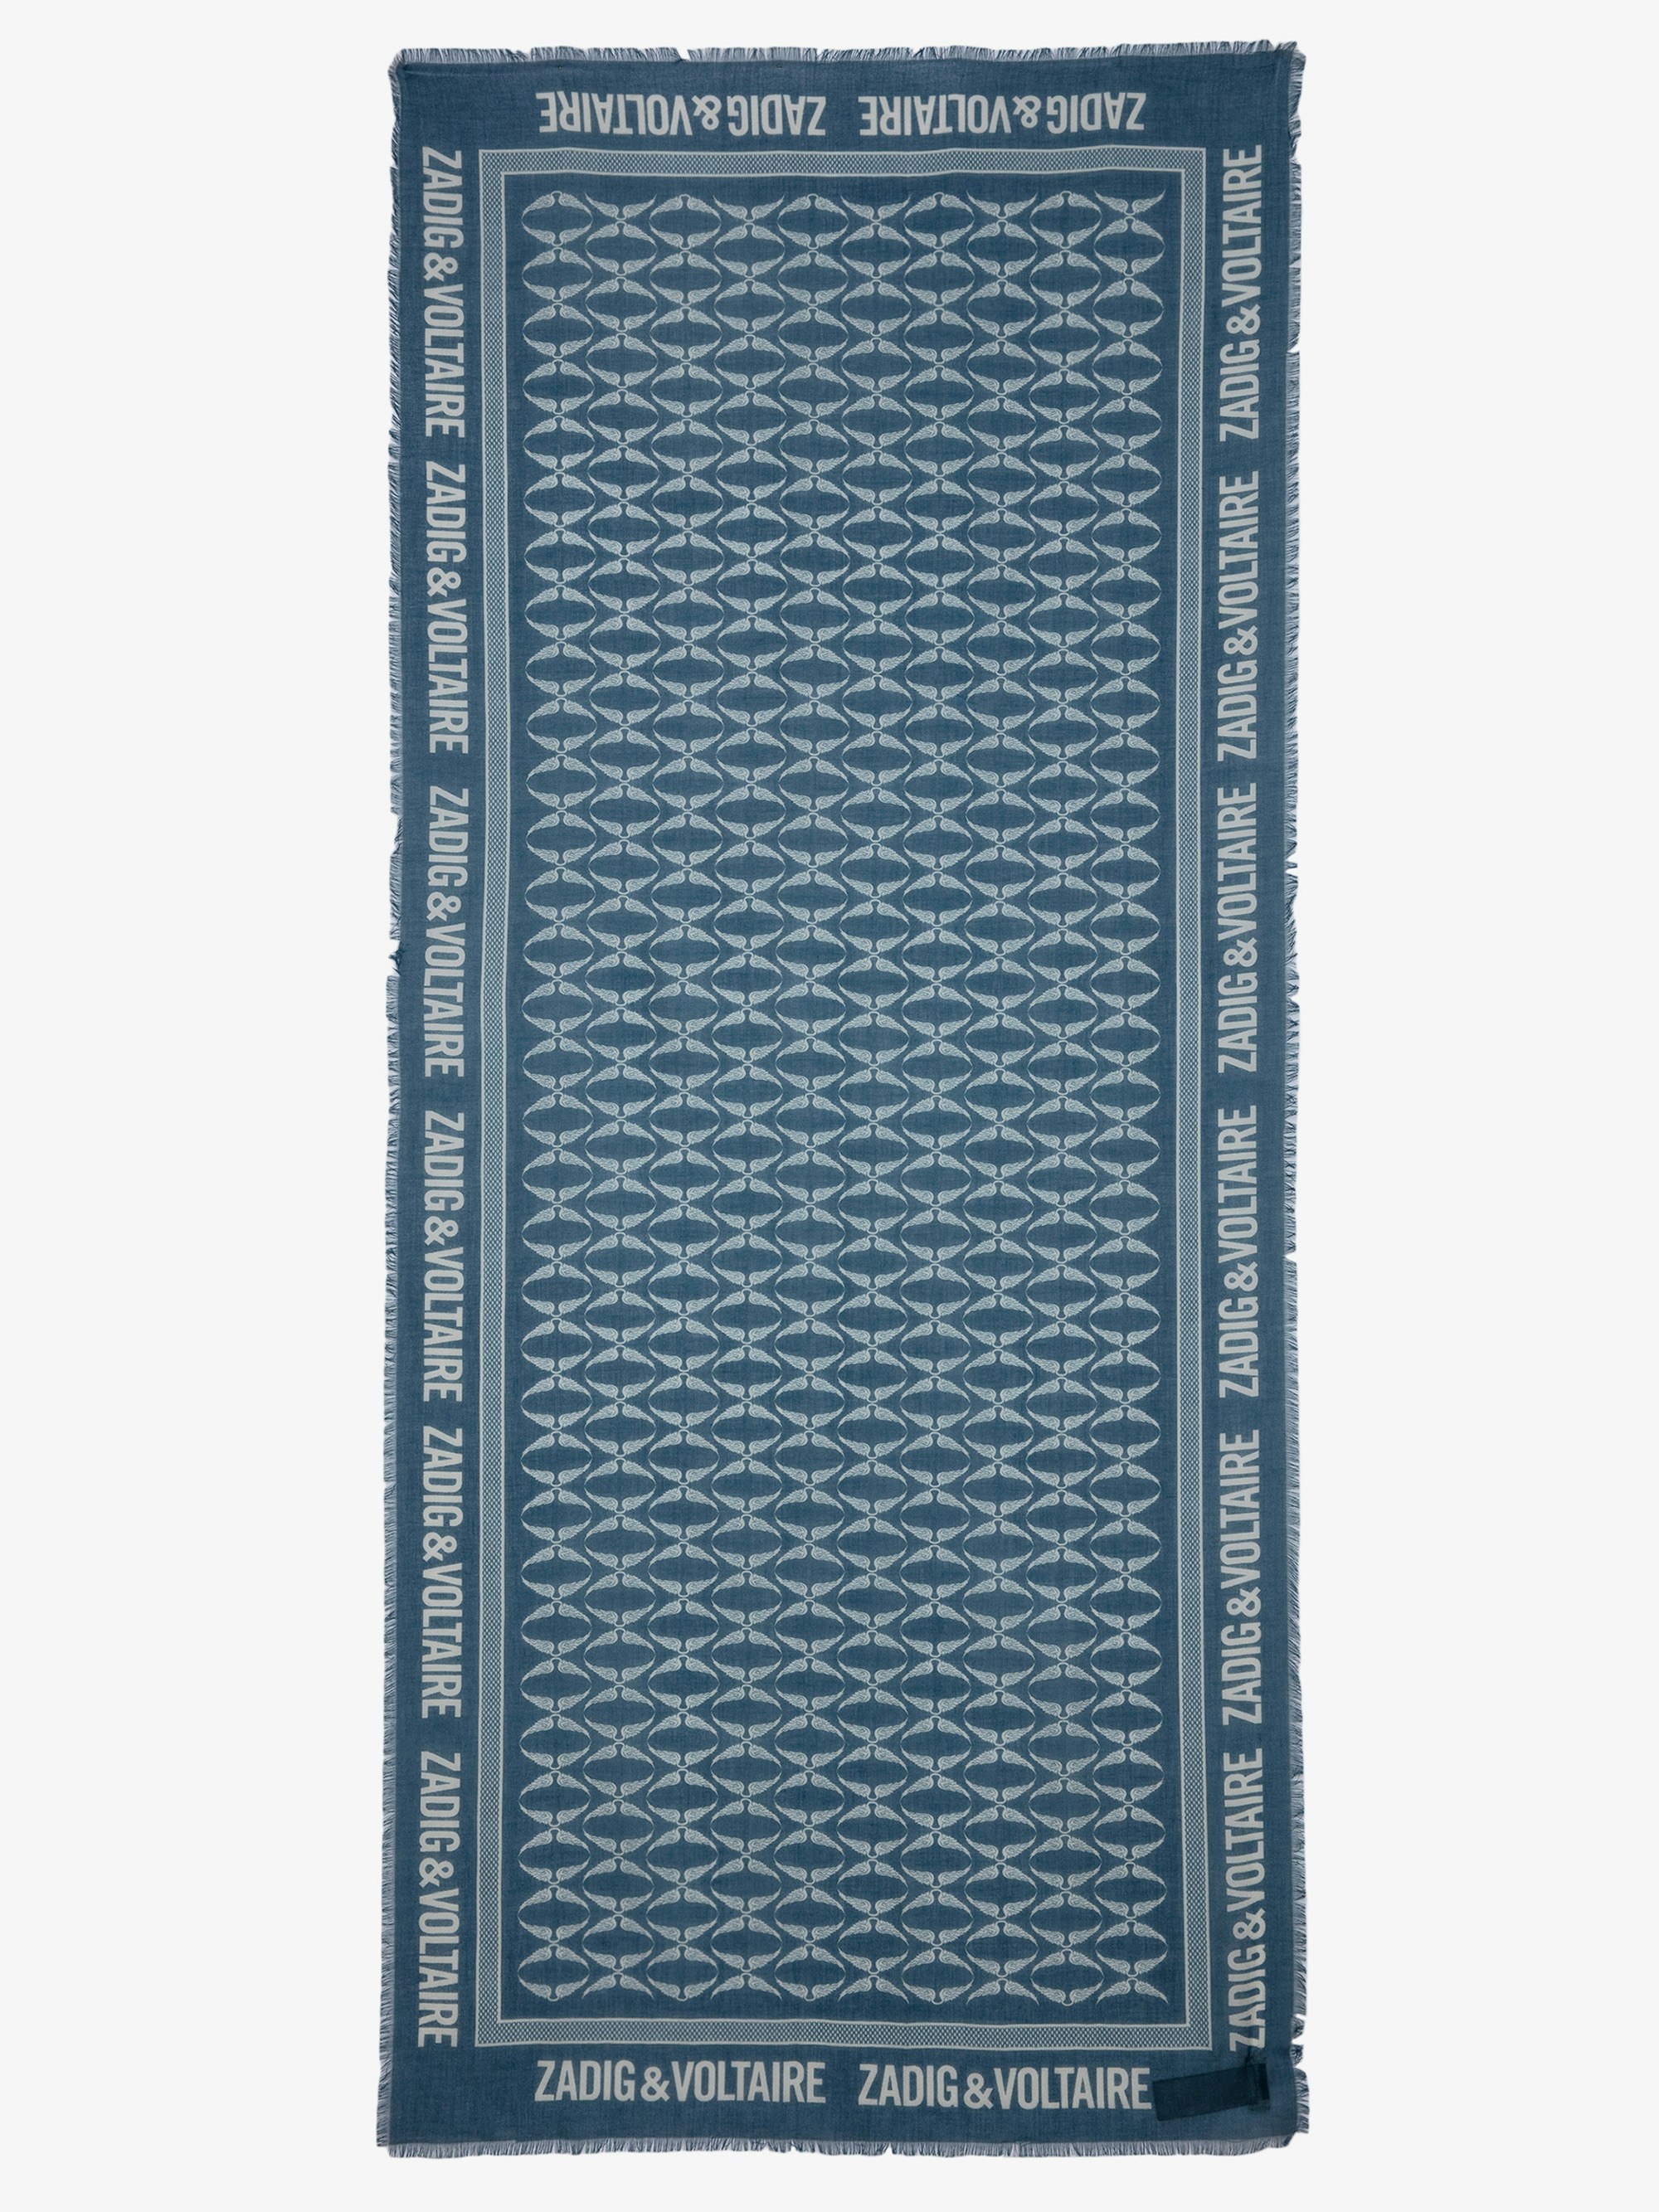 Foulard Delta - Foulard in cotone blu ornato con stampa ad ali.